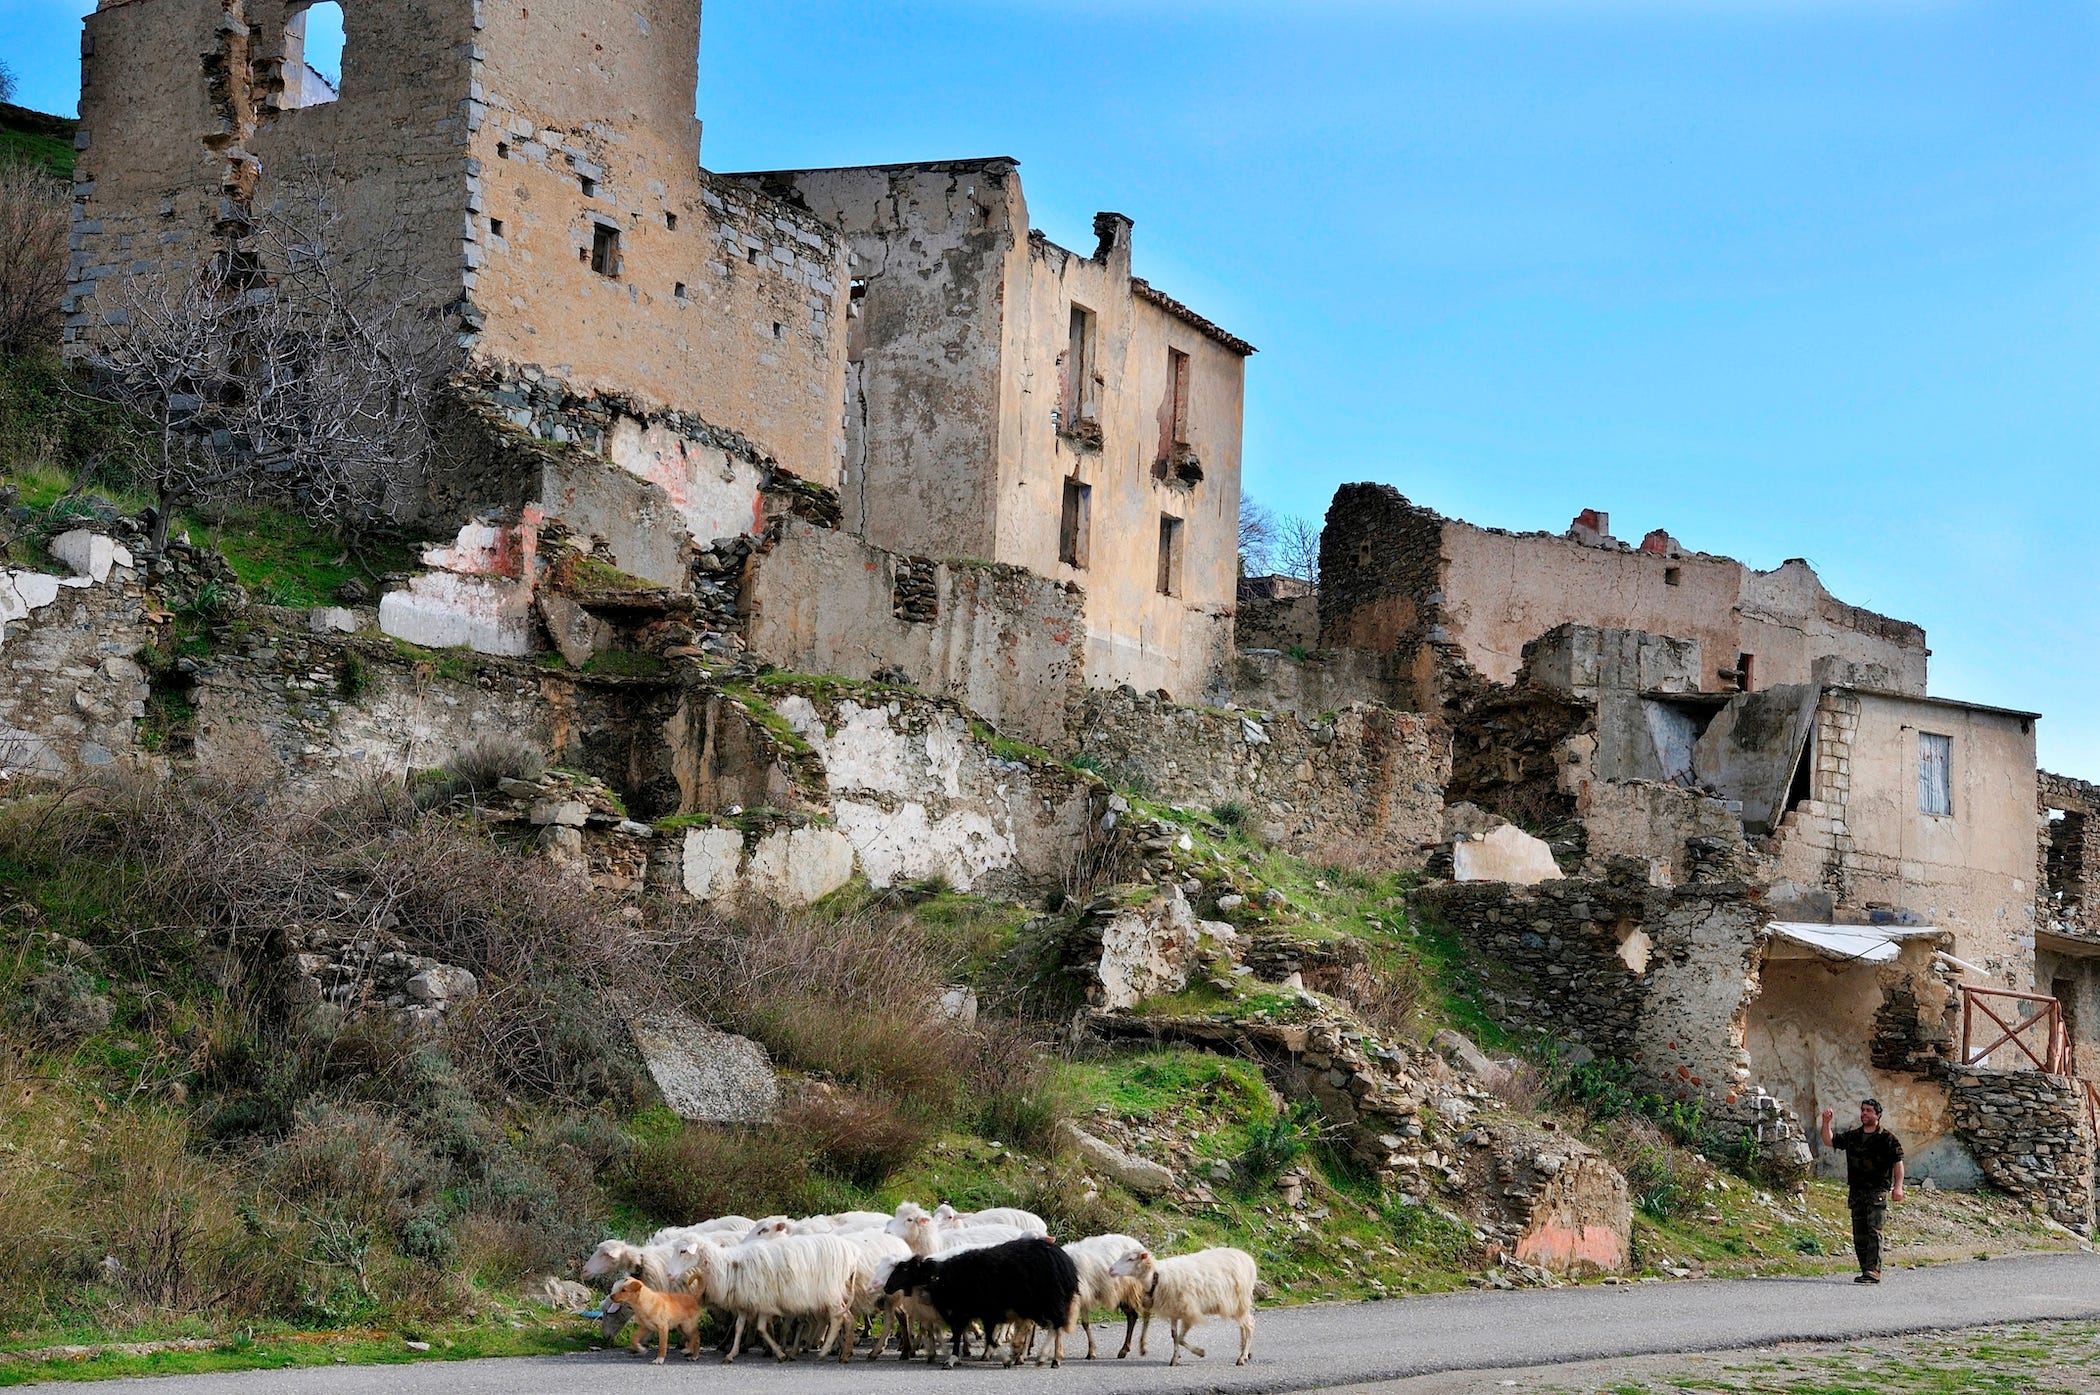 Ein Mann geht mit seinen Schafen in einer verlassenen Stadt auf Sardinien spazieren.